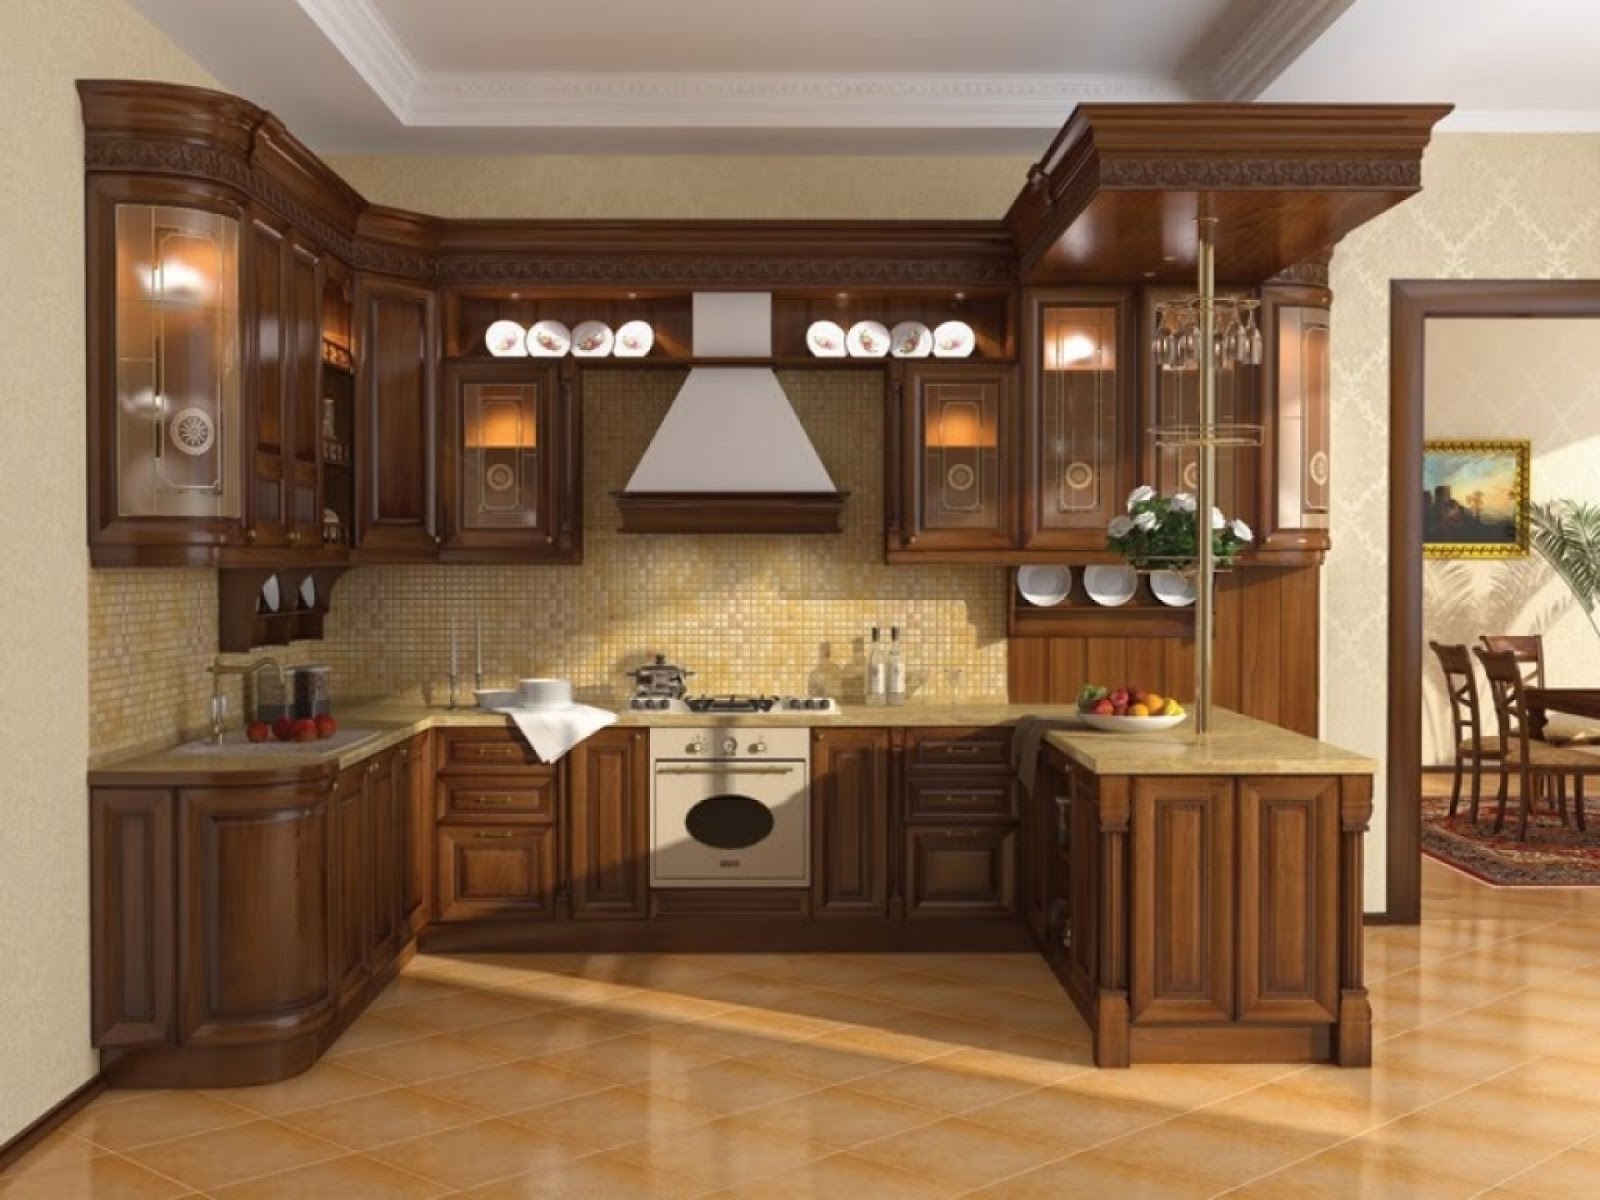 008-kitchen-designs-wall-cabinet-design-ideas-cabinets-photos-new-best-1920x1440.jpg